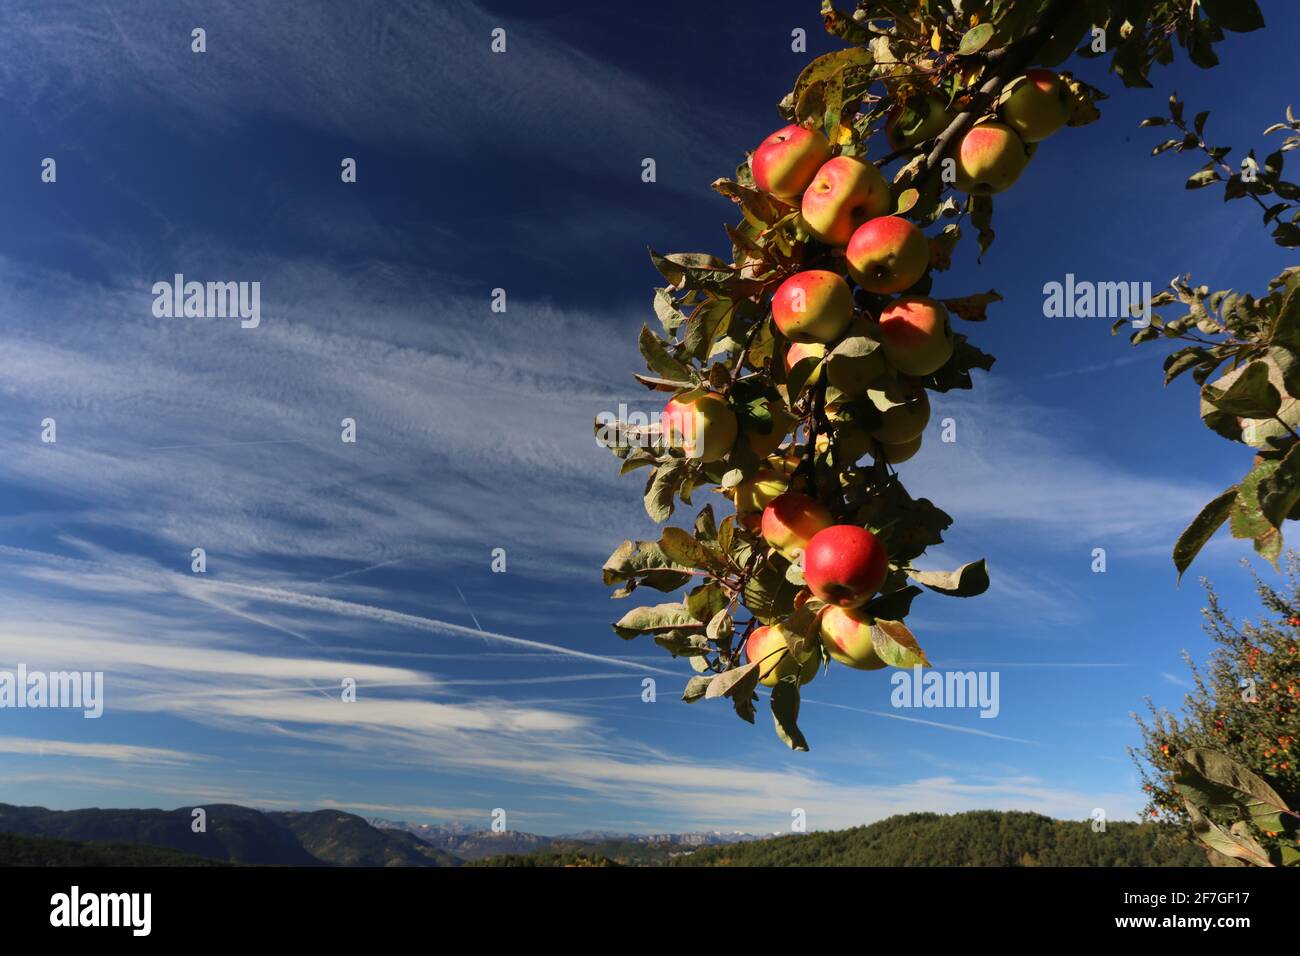 Herbstlicher AST mit roten reifen Äpfeln gegen blauen Himmel in den Dolomiten in Südtirol, Italien Foto Stock